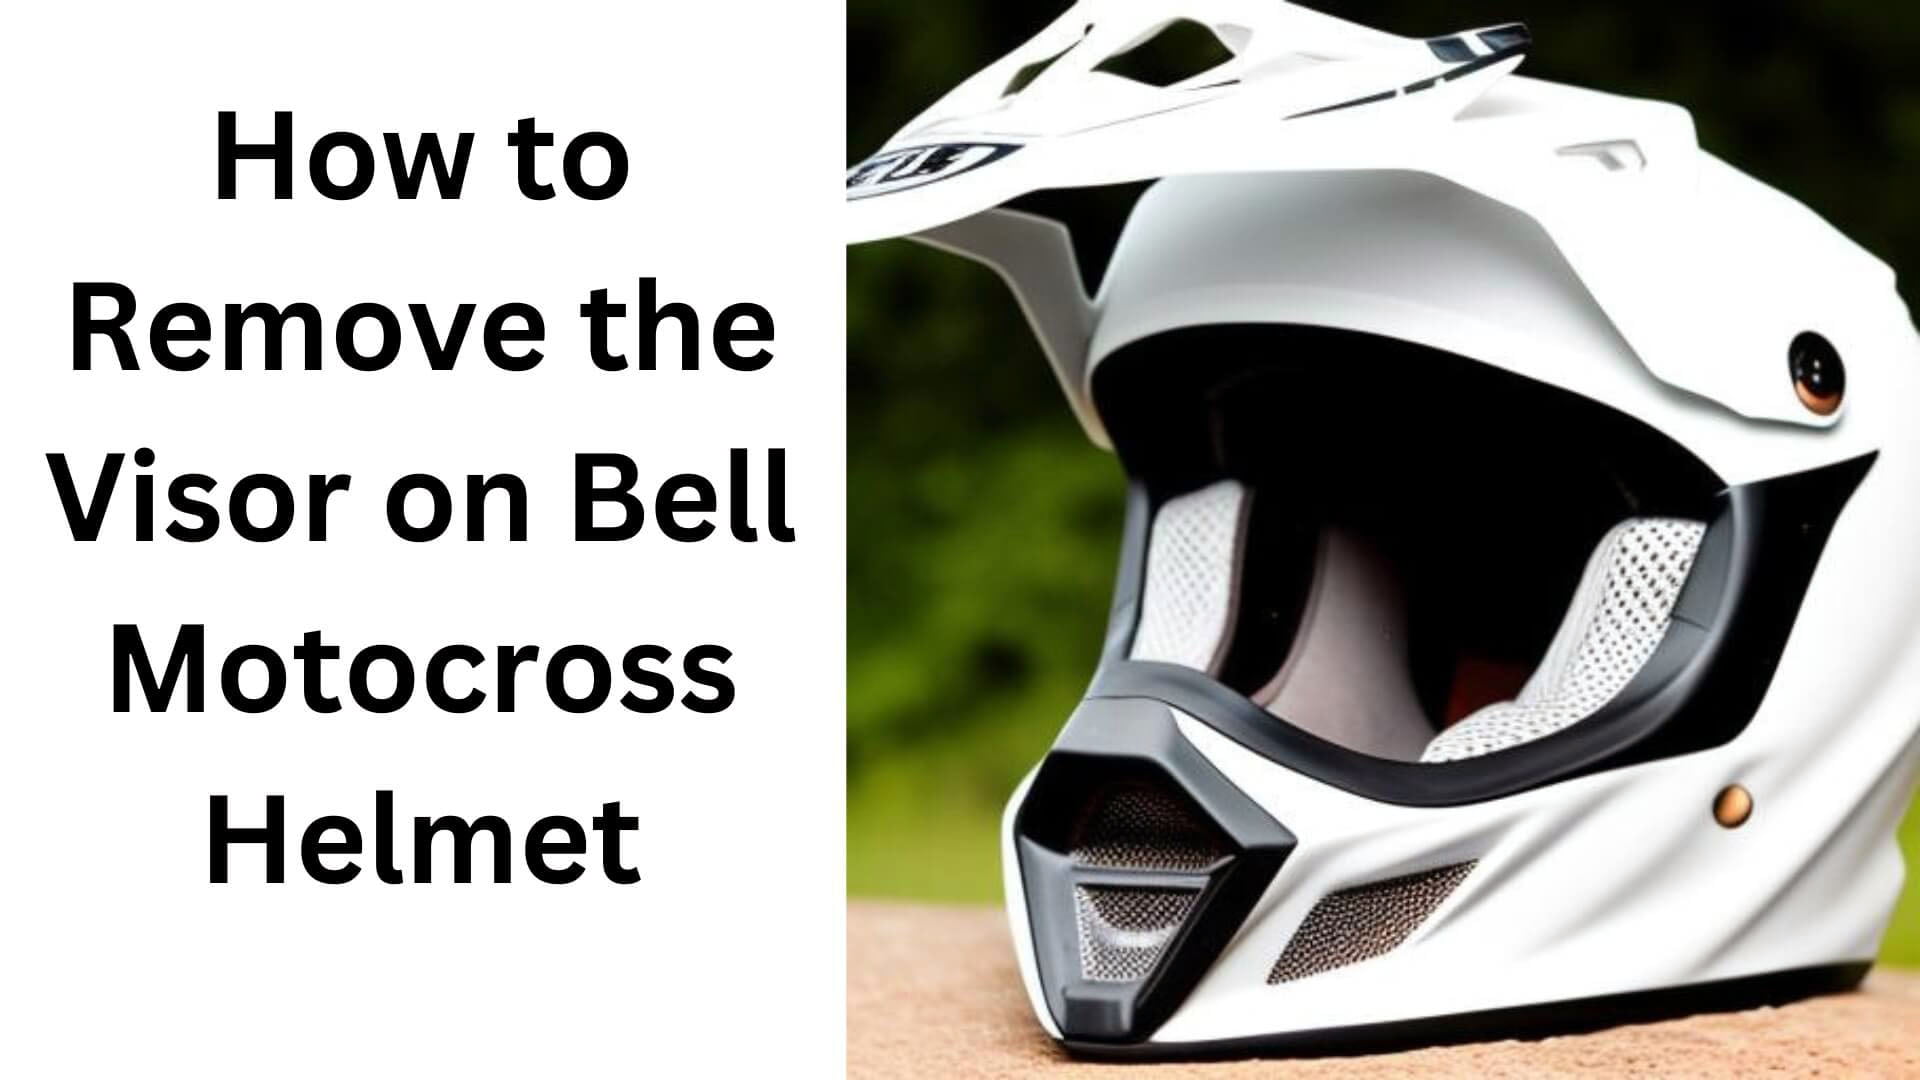 How to Remove The Visor on a Bell Motocross Helmet?